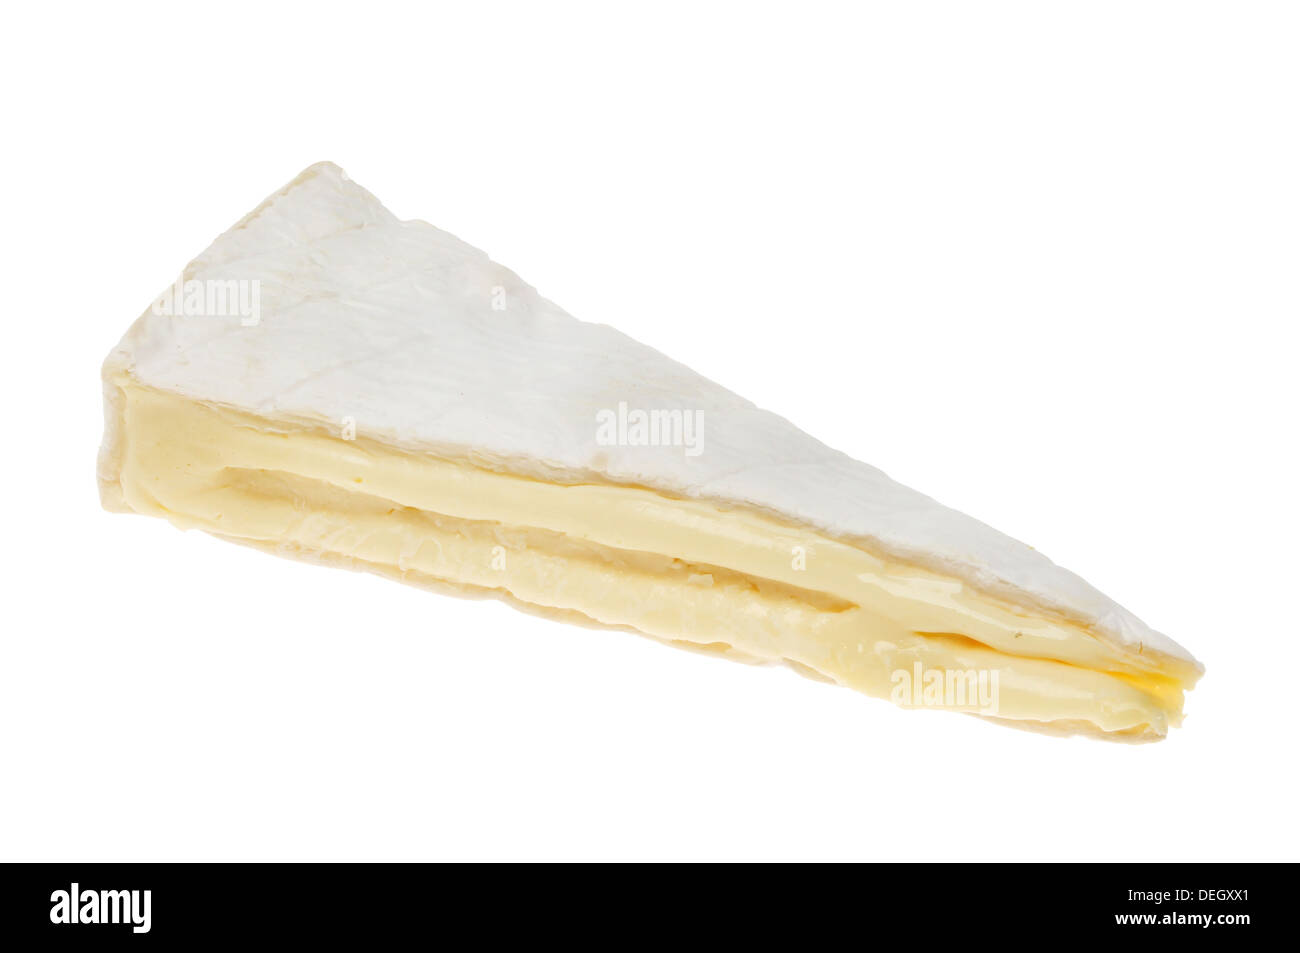 Coin de fromage brie mûrs isolés contre white Banque D'Images